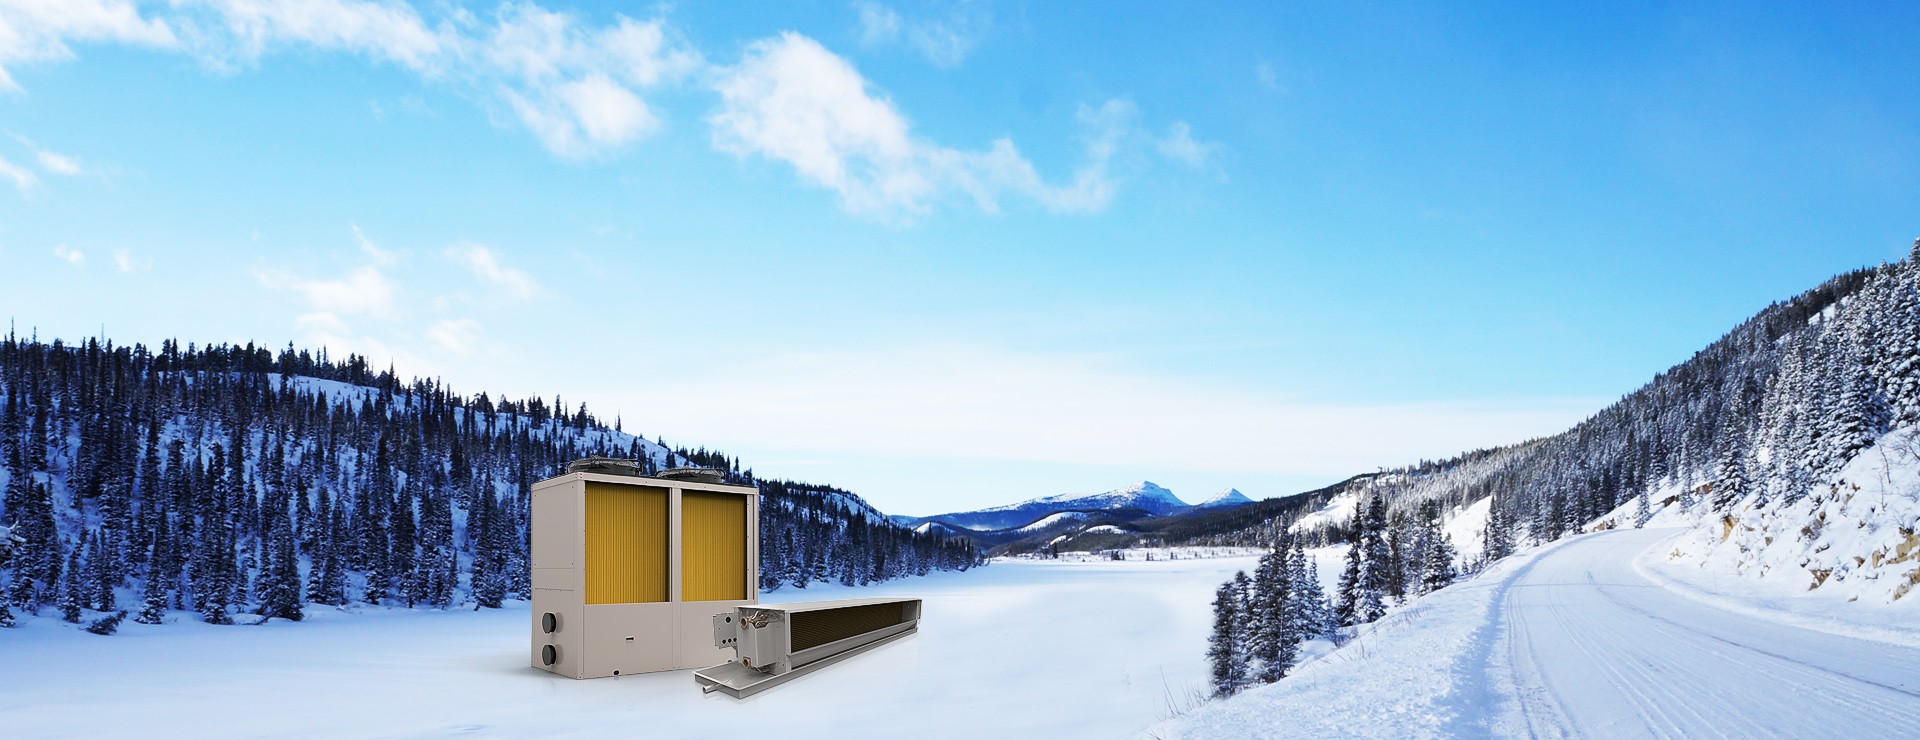 超低溫北極星(采暖、熱水) + 末端：專門針對寒冷地區采暖和熱水需求設計，采暖熱水一機解決，即安全方便又經濟節能。